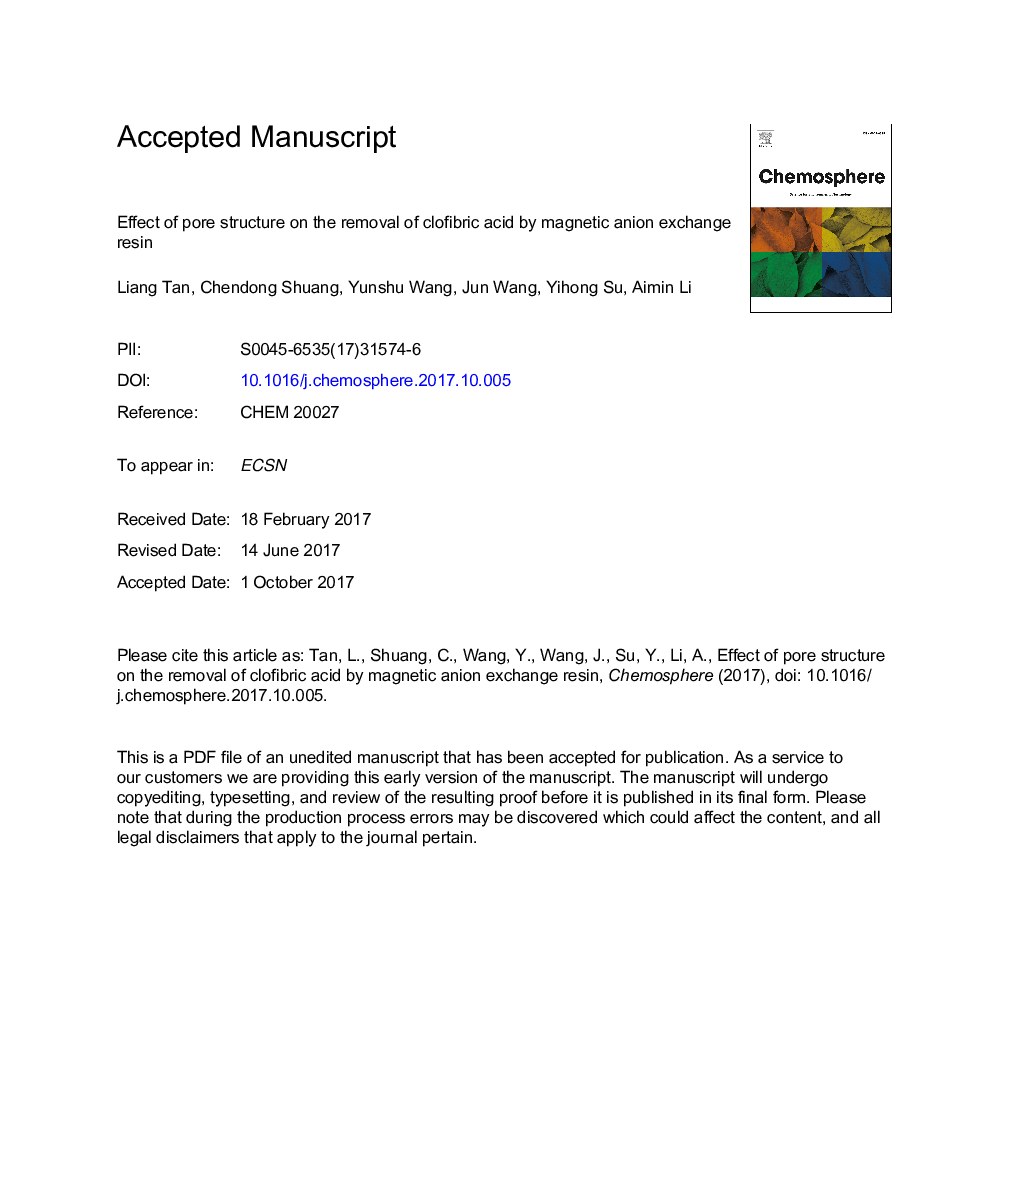 اثر ساختار منافذ بر حذف اسید کلافیبریک با رزین مبادله آنیونی مغناطیسی 